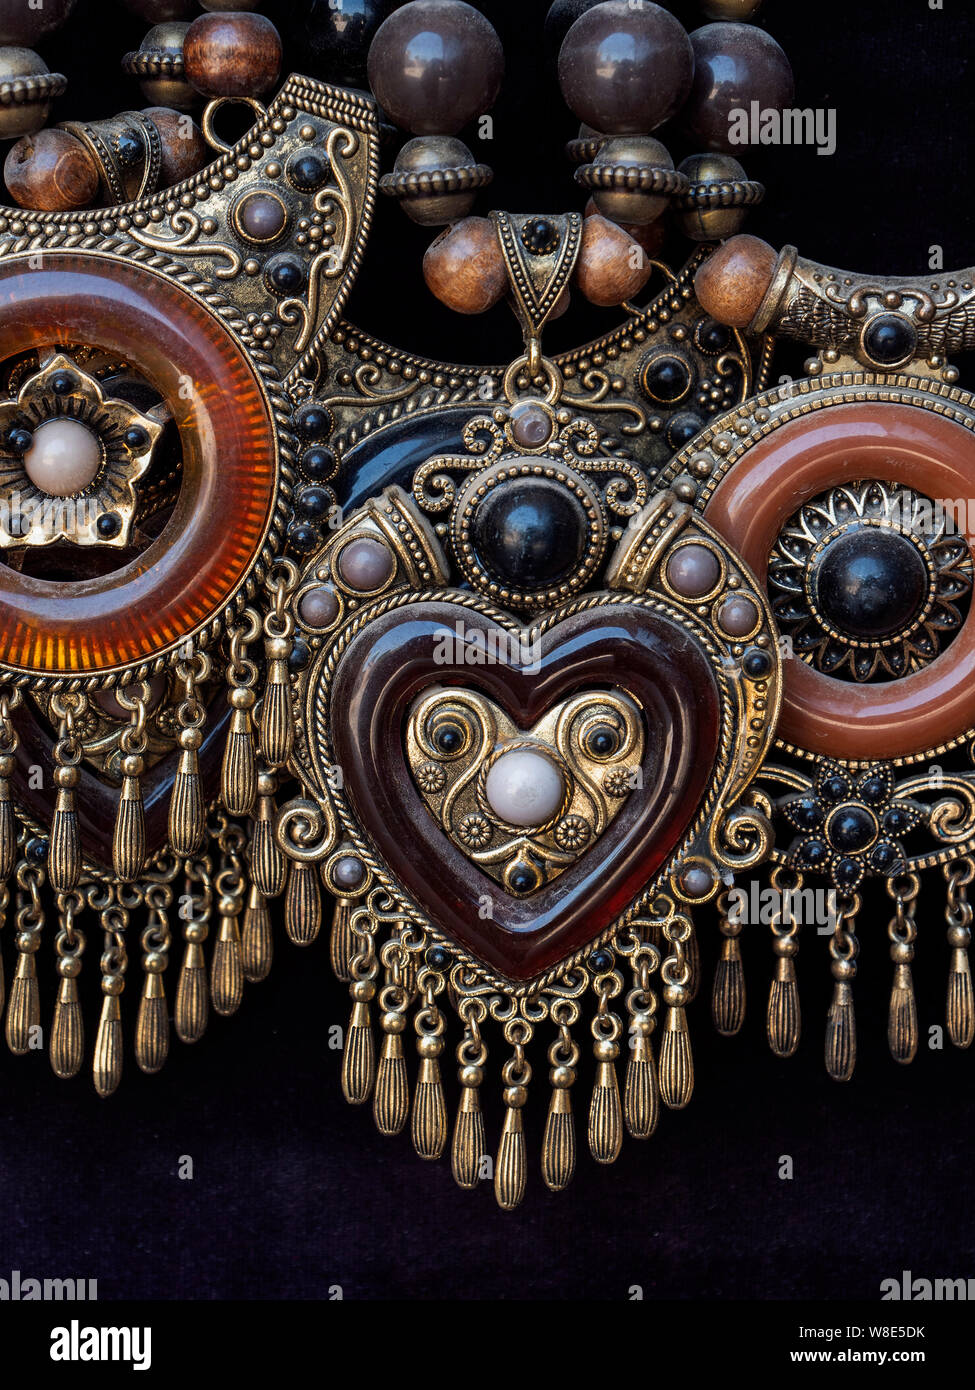 jewelry. souvenirs in Tashkent, Uzbekistan, Asia Stock Photo